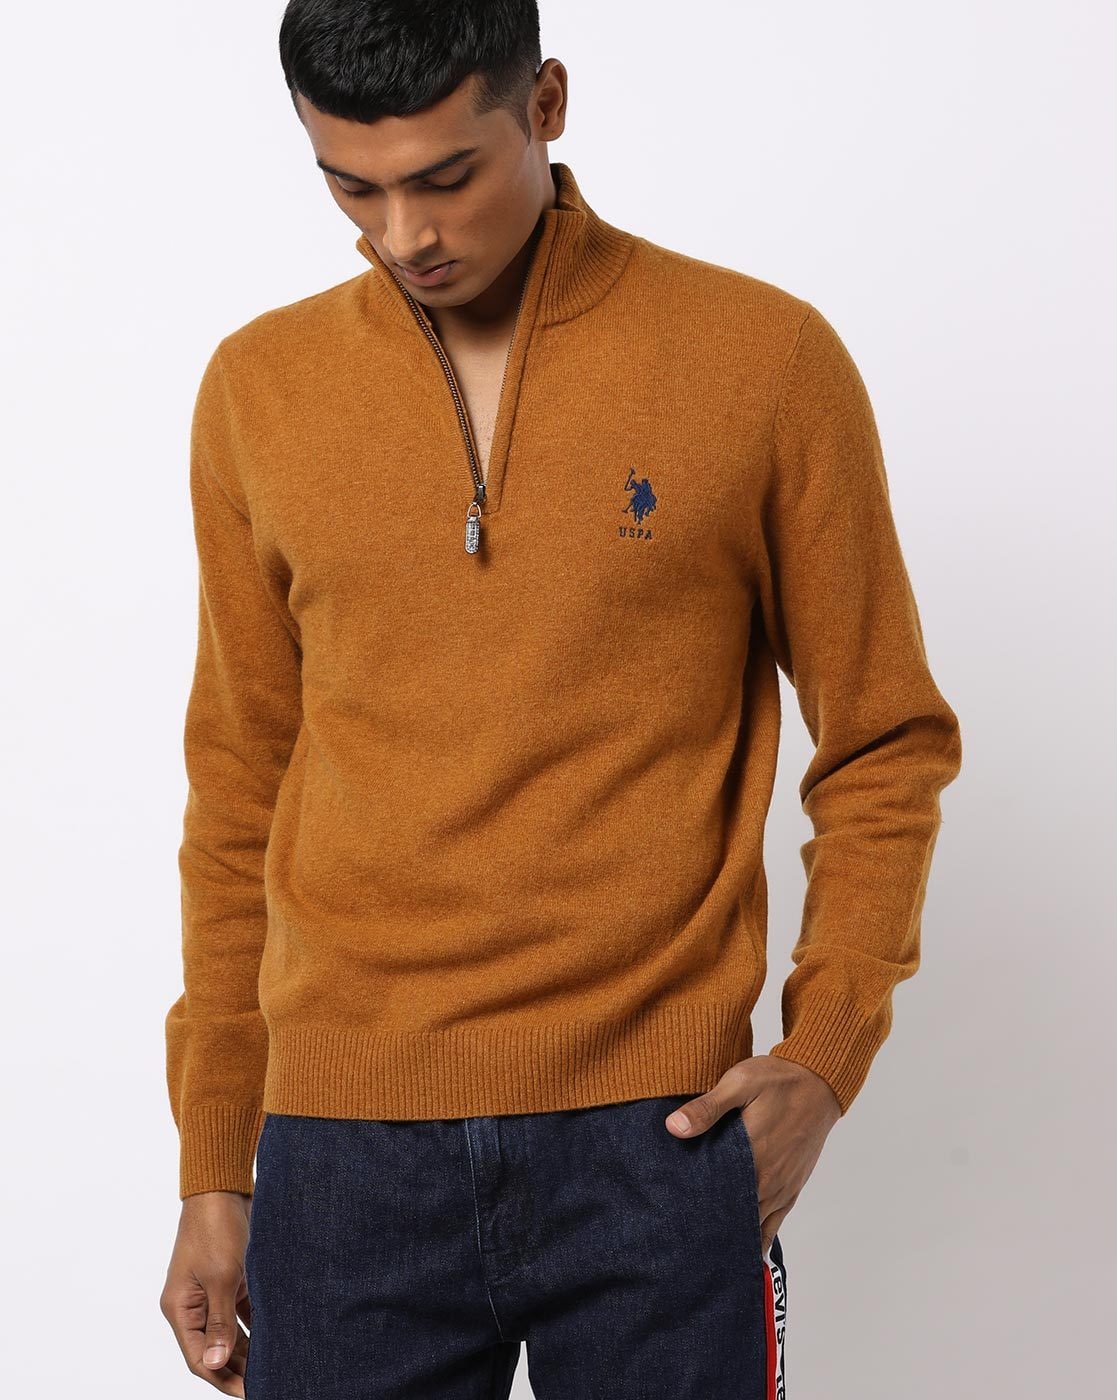 beroerte rivier Lol Buy Orange Sweaters & Cardigans for Men by U.S. Polo Assn. Online | Ajio.com